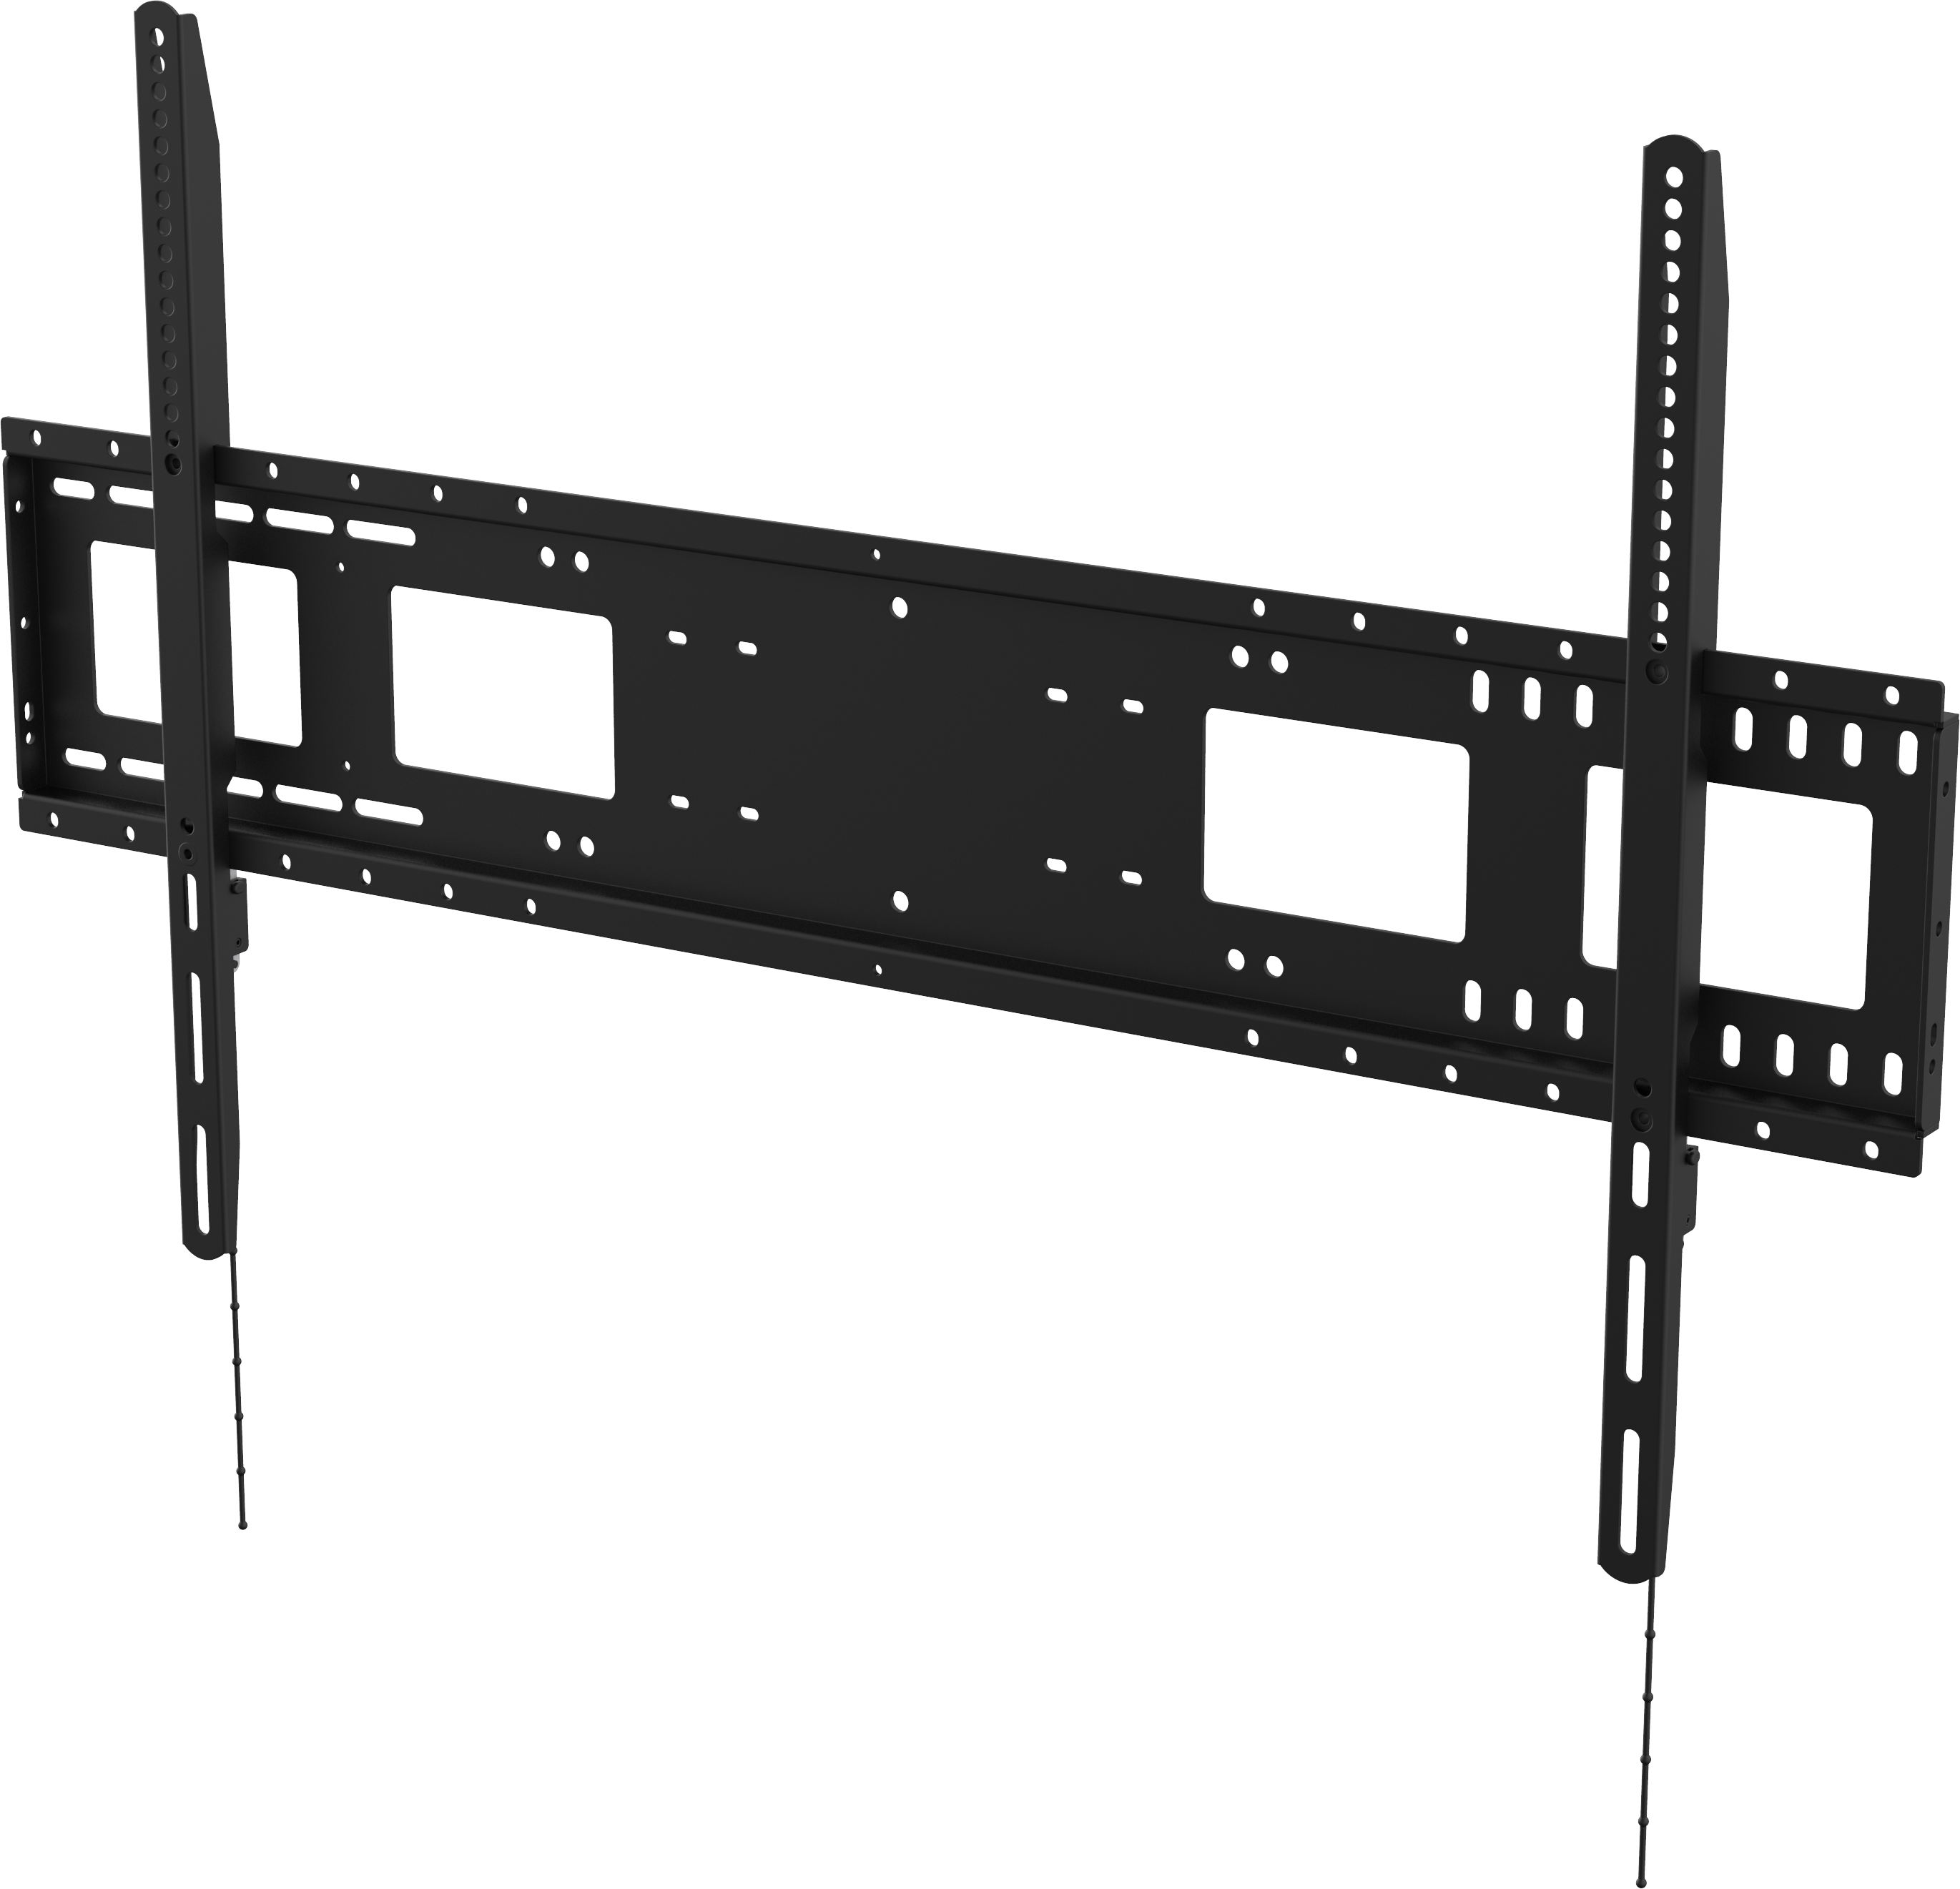 An image showing Suporte de parede de resistência elevada para ecrãs planos 1000×600